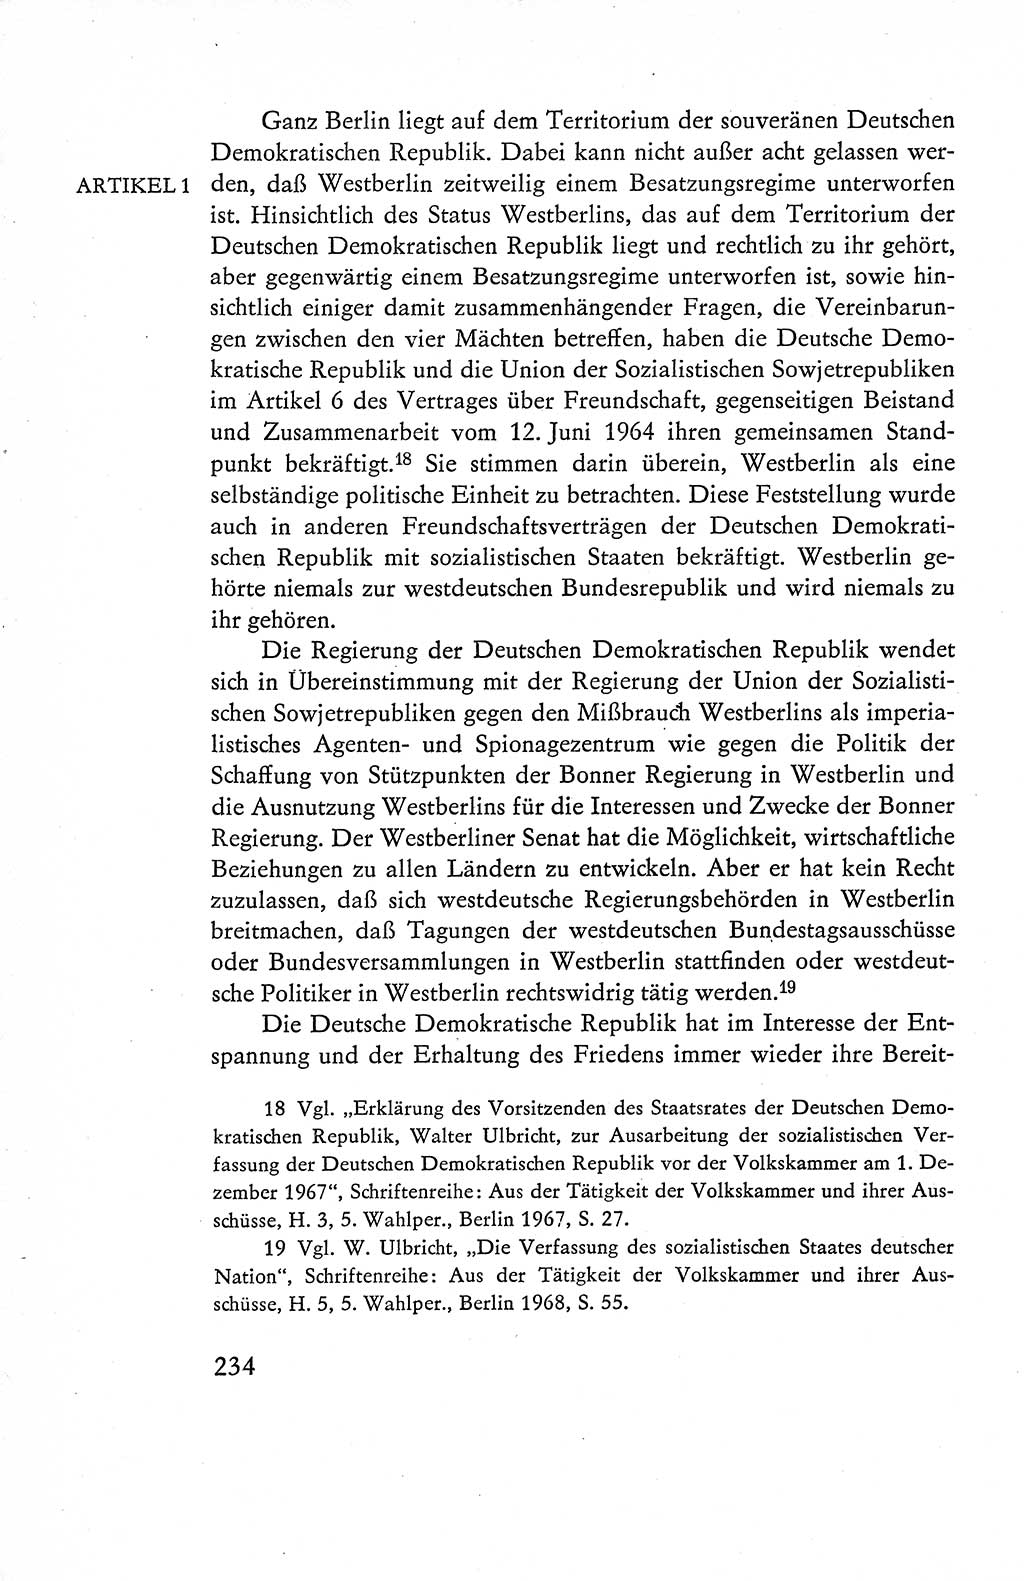 Verfassung der Deutschen Demokratischen Republik (DDR), Dokumente, Kommentar 1969, Band 1, Seite 234 (Verf. DDR Dok. Komm. 1969, Bd. 1, S. 234)